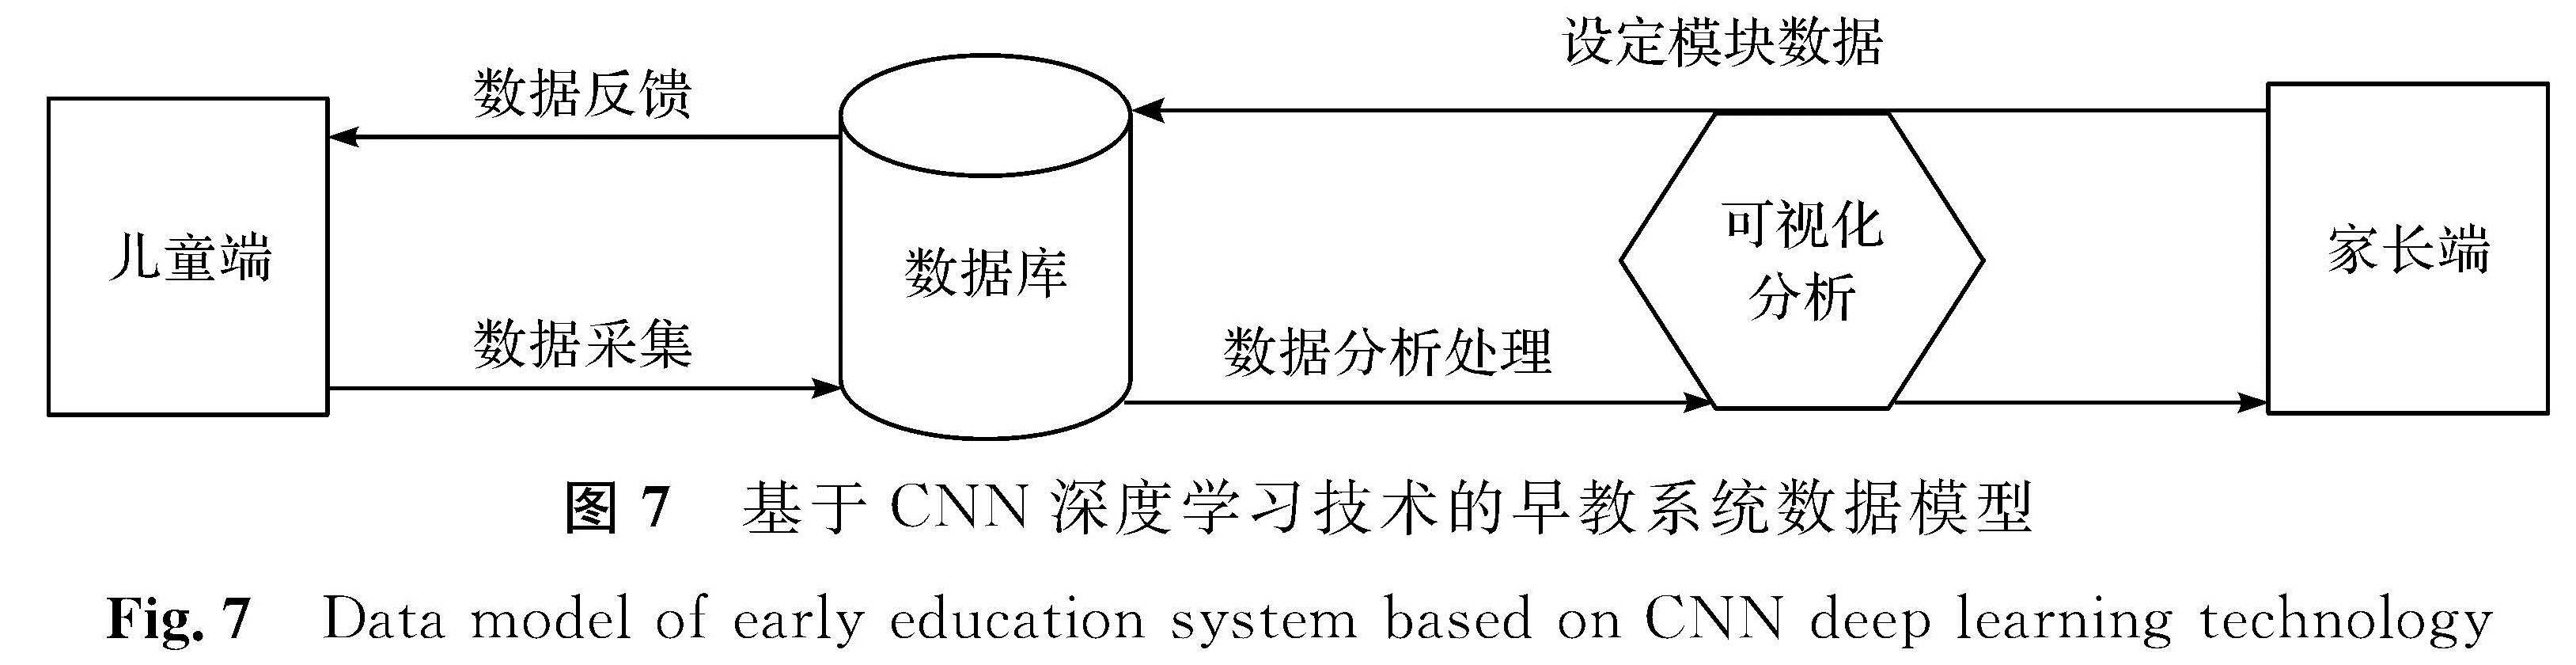 图7 基于CNN深度学习技术的早教系统数据模型<br/>Fig.7 Data model of early education system based on CNN deep learning technology